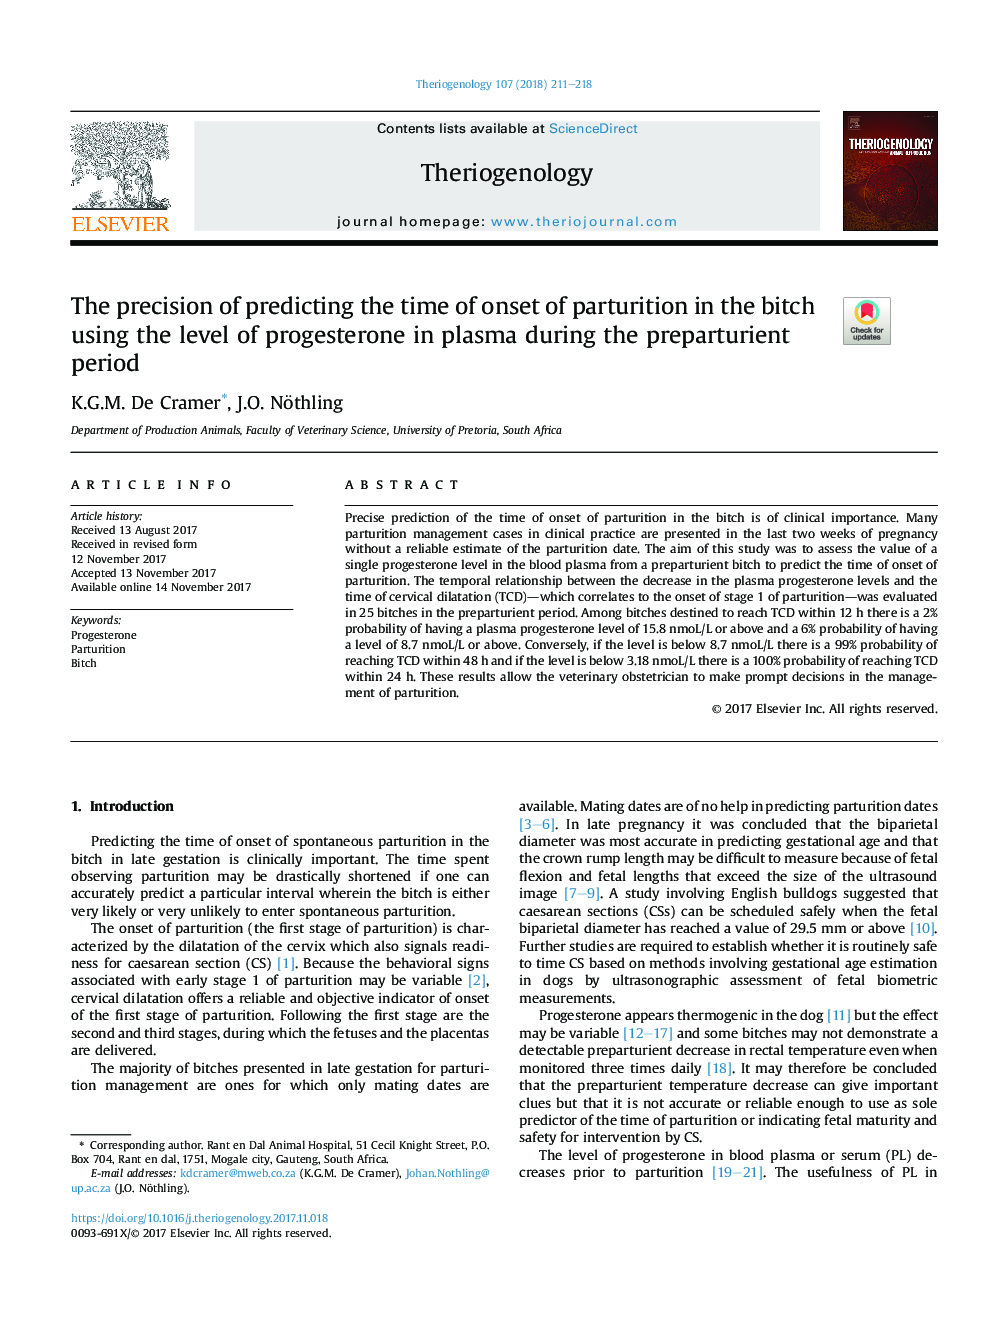 دقت پیش بینی زمان شروع زایش در عوضی با استفاده از سطح پروژسترون در پلاسما در دوران قبل از زایمان 